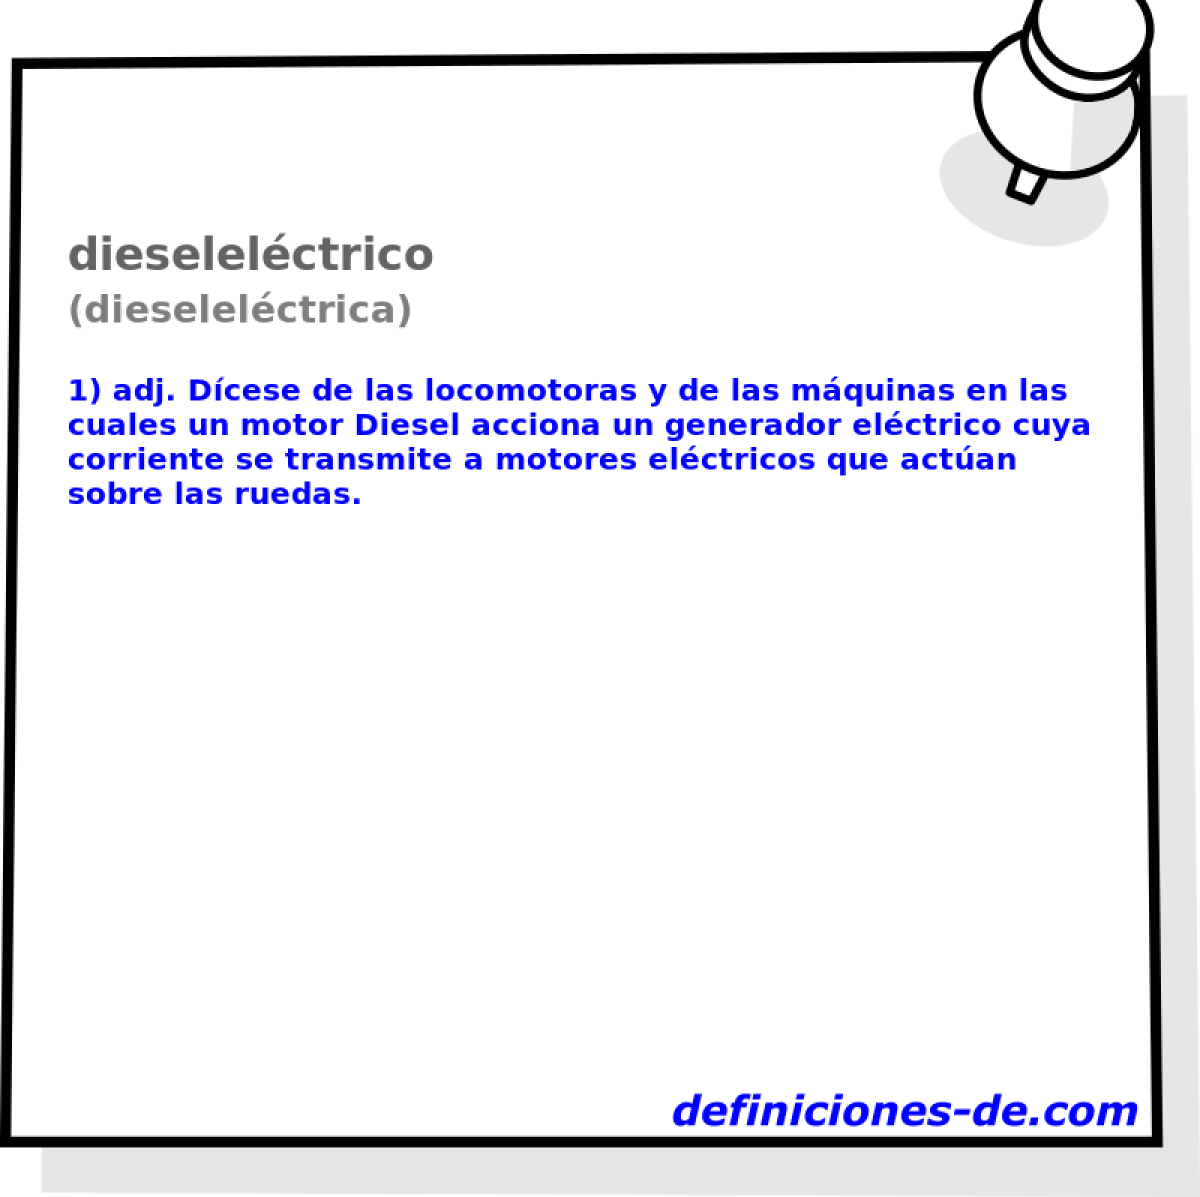 dieselelctrico (dieselelctrica)